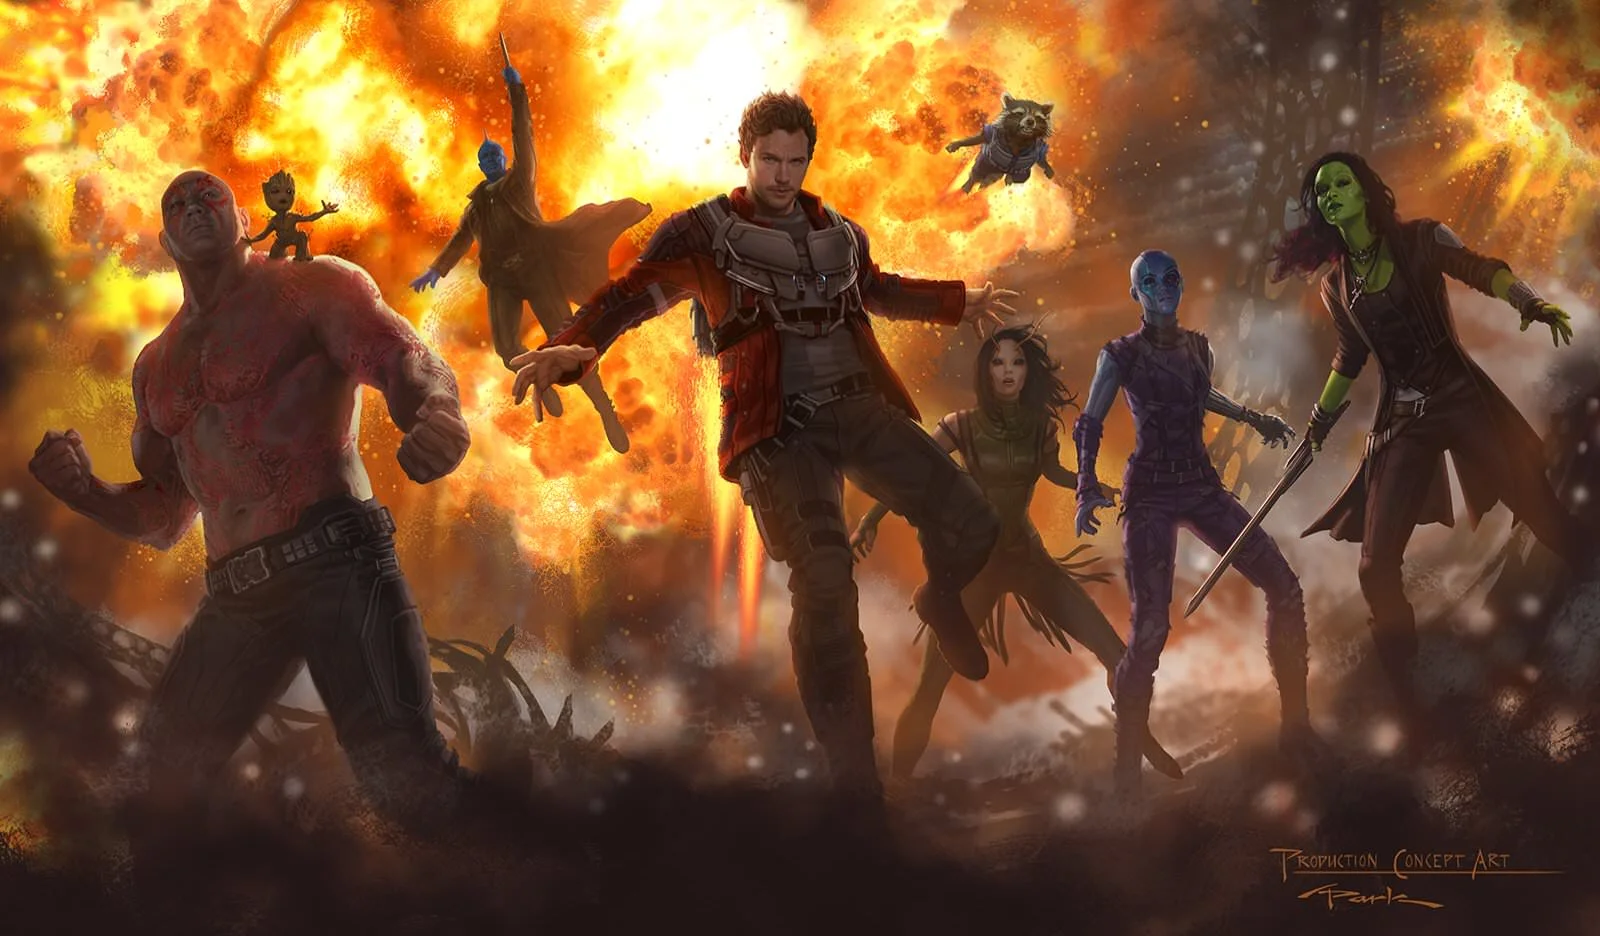 Új harci képet mutattak be Űrlordról és Draxről A galaxis őrzői vol. 2.-ből